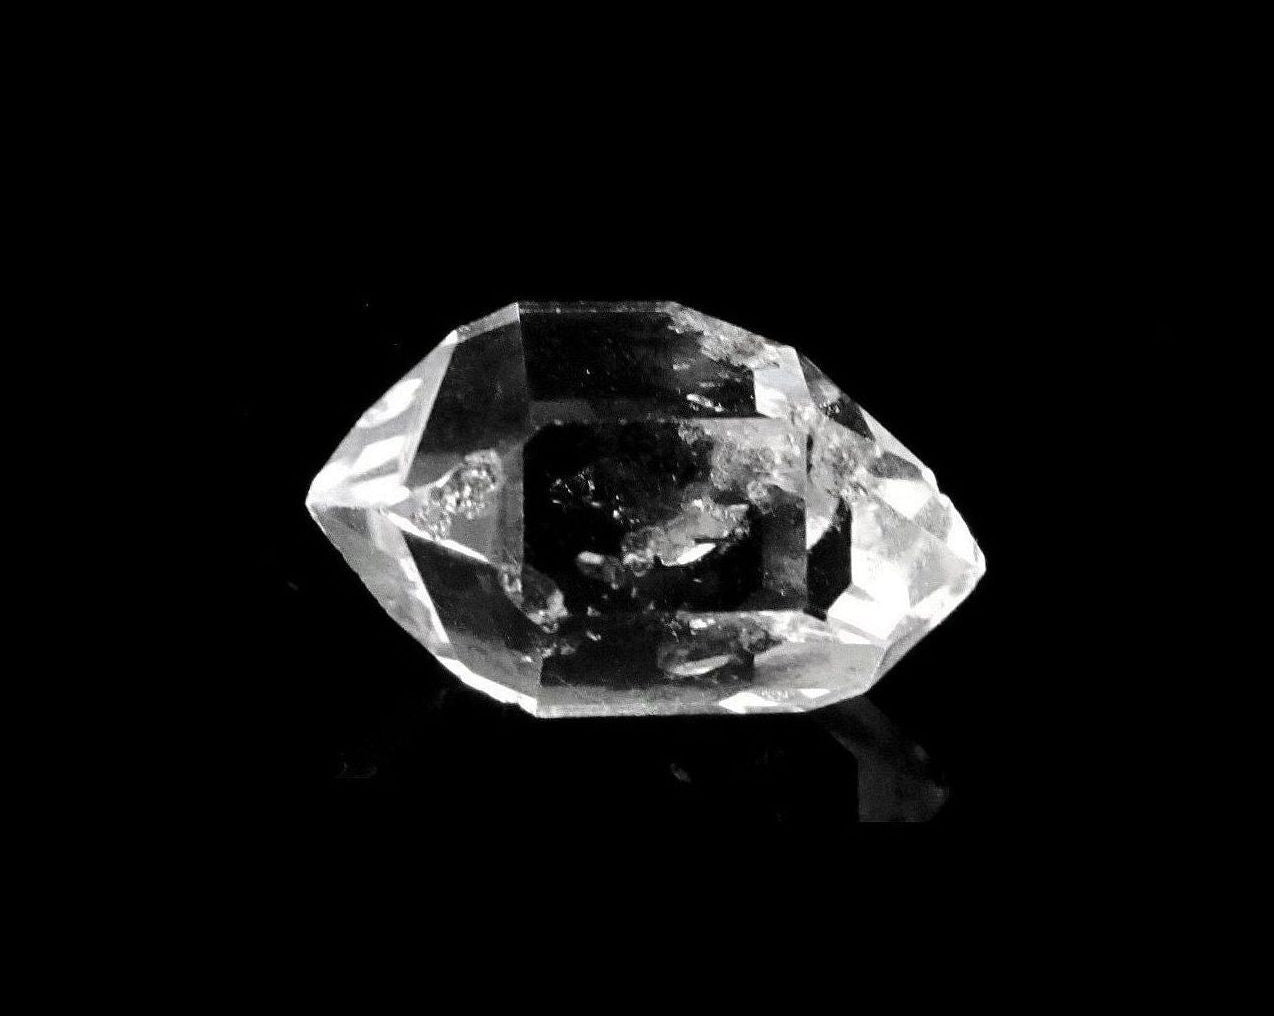 Herkimer Diamanten Bergkristall Doppelender Quarzkristalle